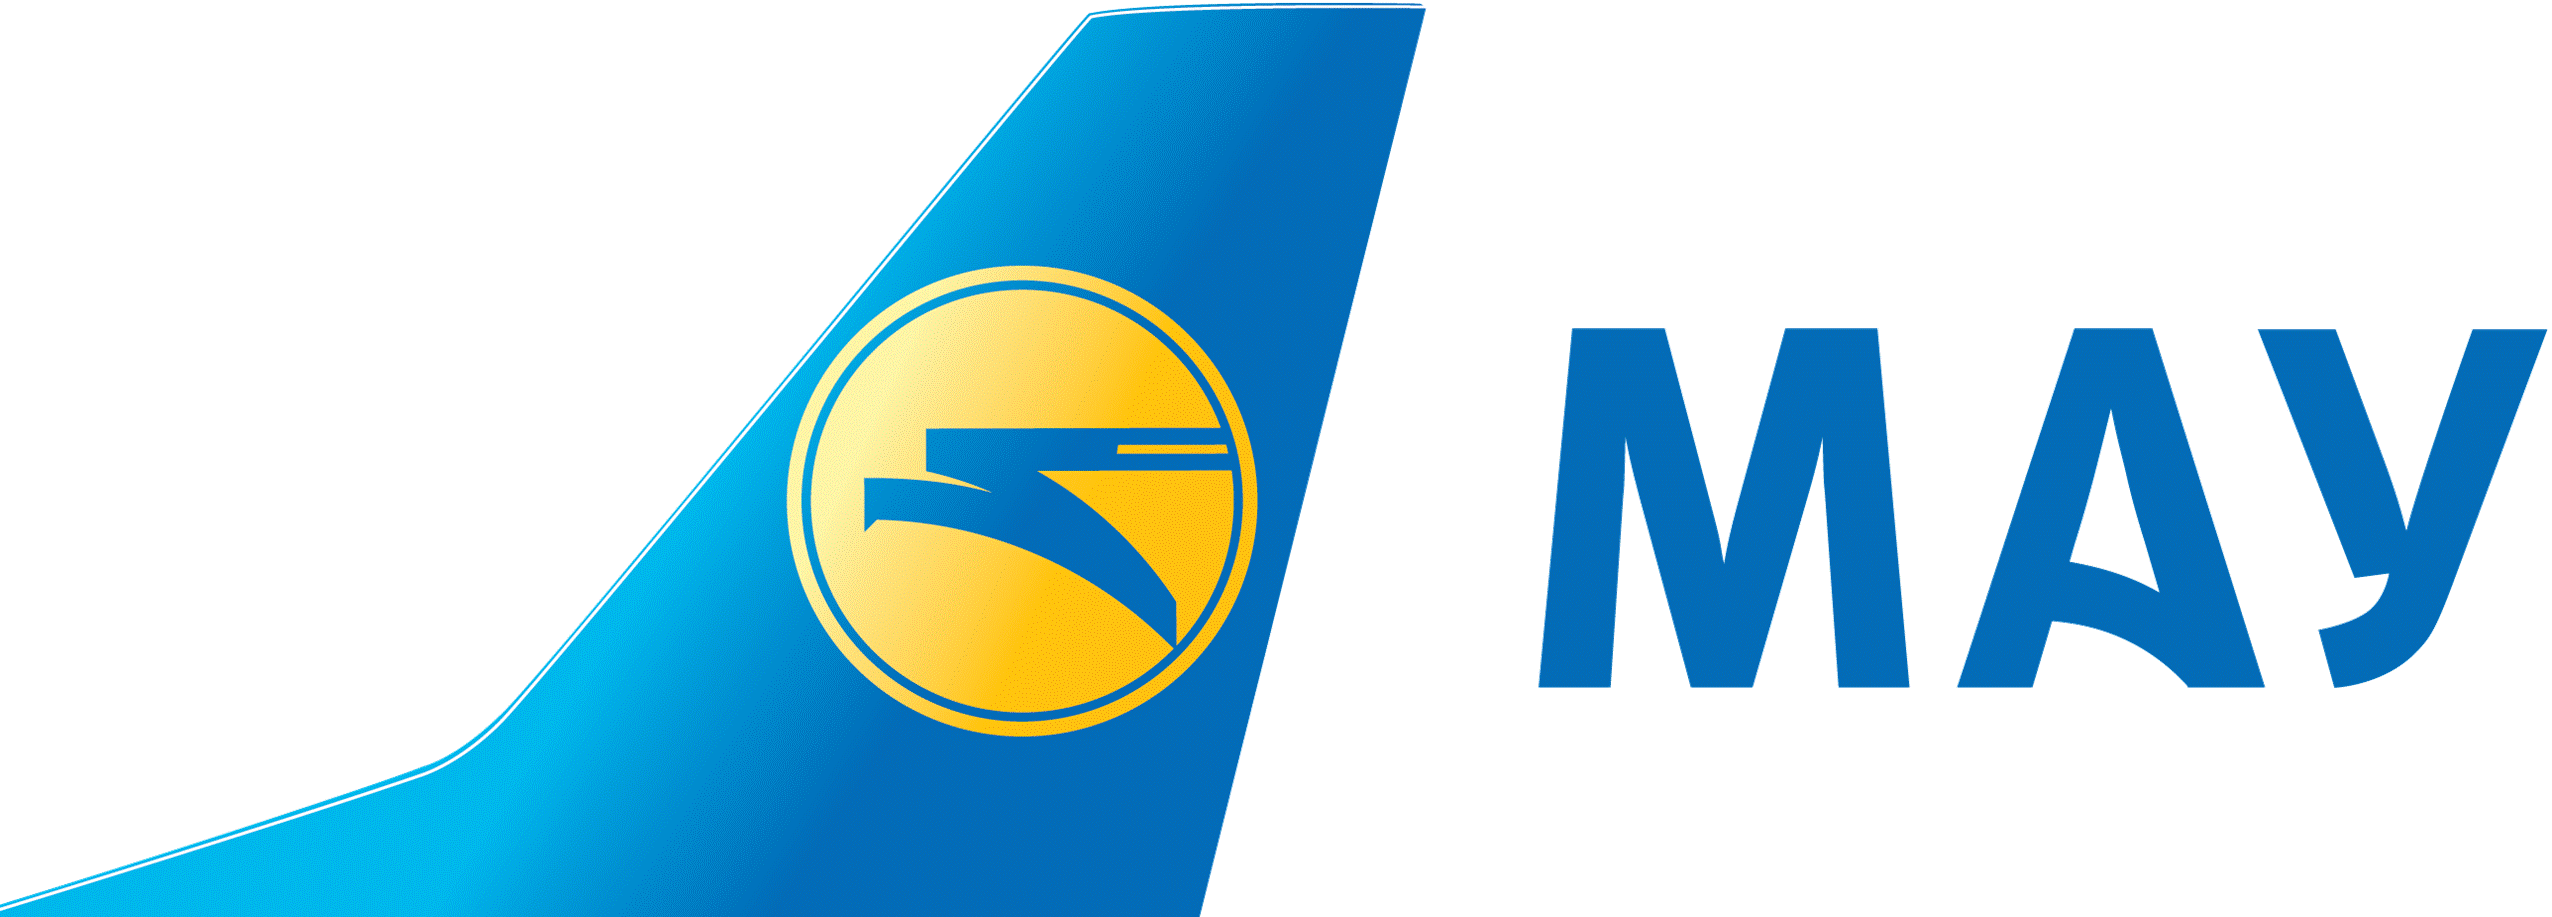 18 квітня стало відомо, що, починаючи з наступного дня, тобто 19 квітня, авіакомпанія «Міжнародні авіалінії України», або МАУ, оголосила про Зміни в політиці взаємодії зі своїми агентами з продажу